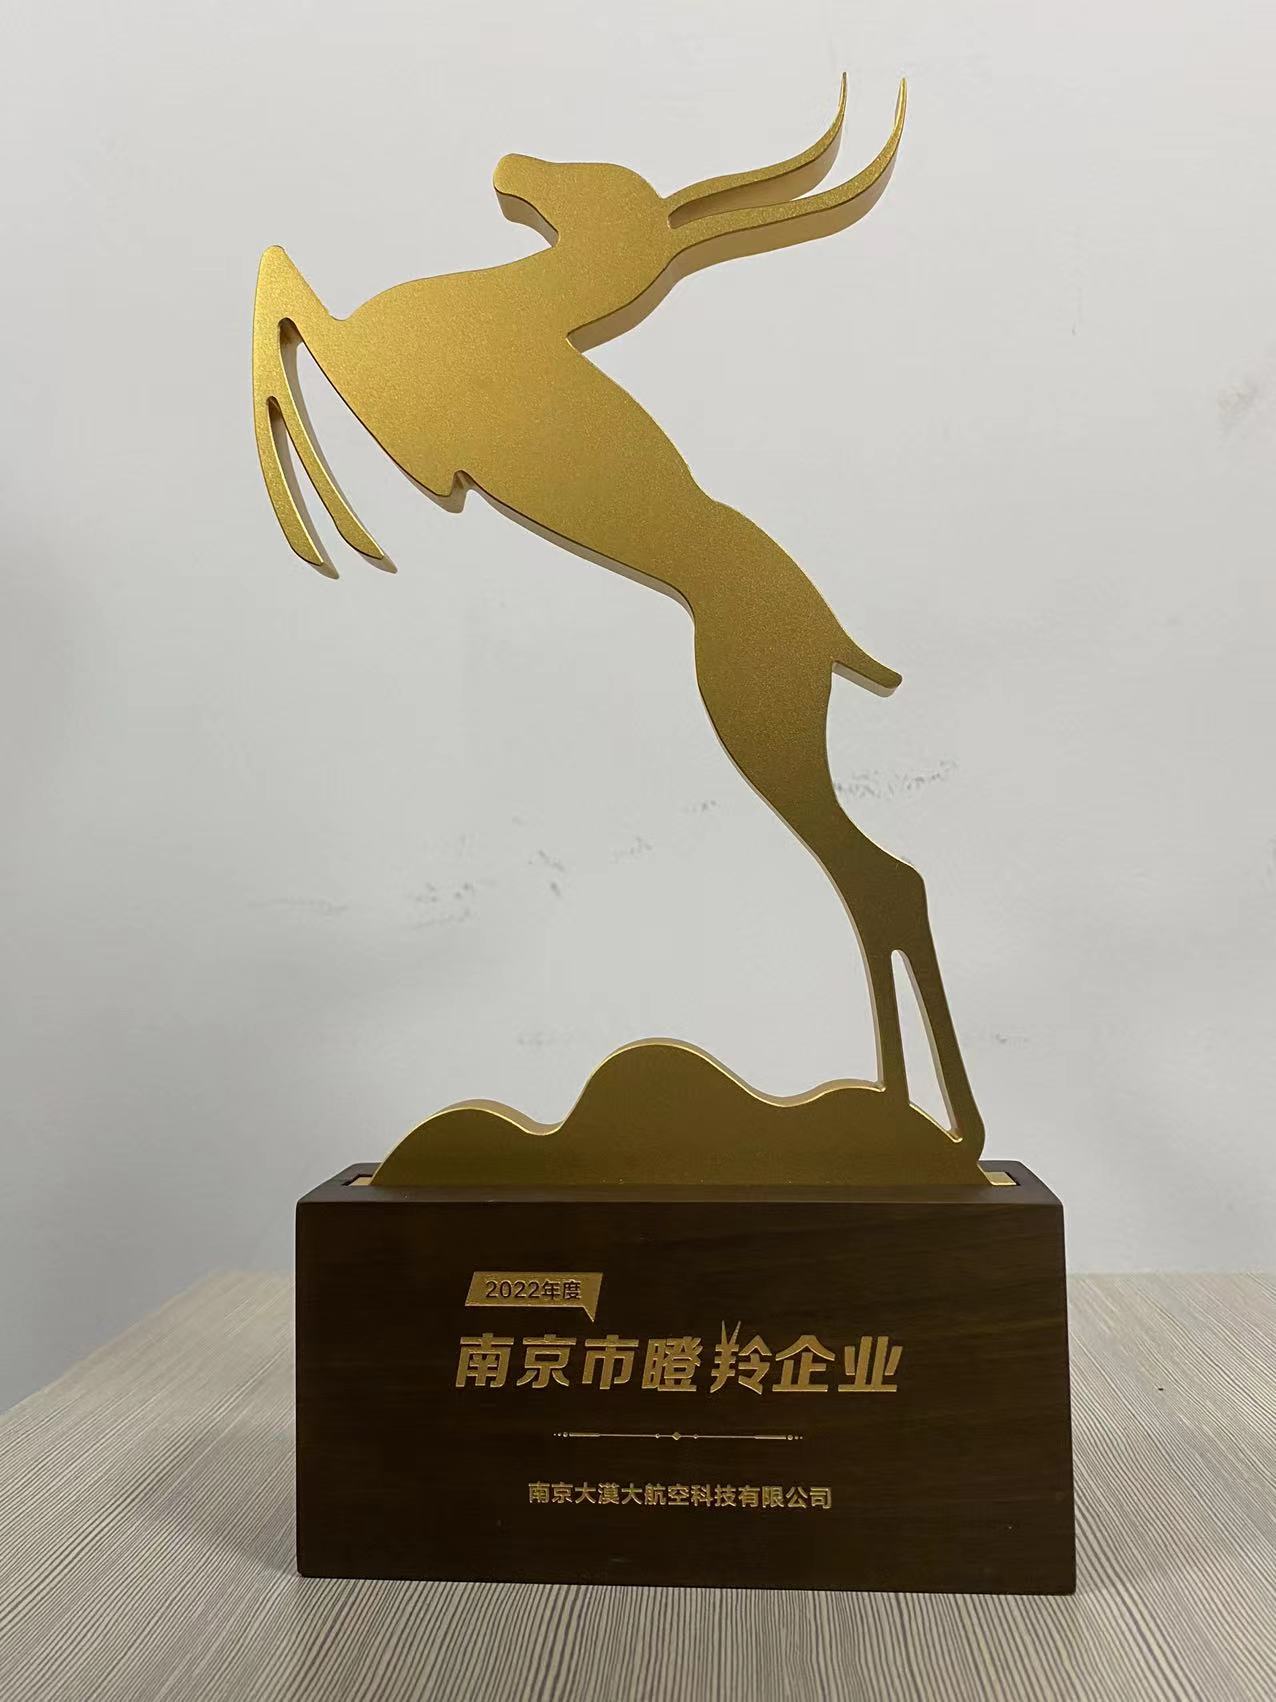 南京大漠大航空科技有限公司荣获“2022年度南京市瞪羚企业”荣誉